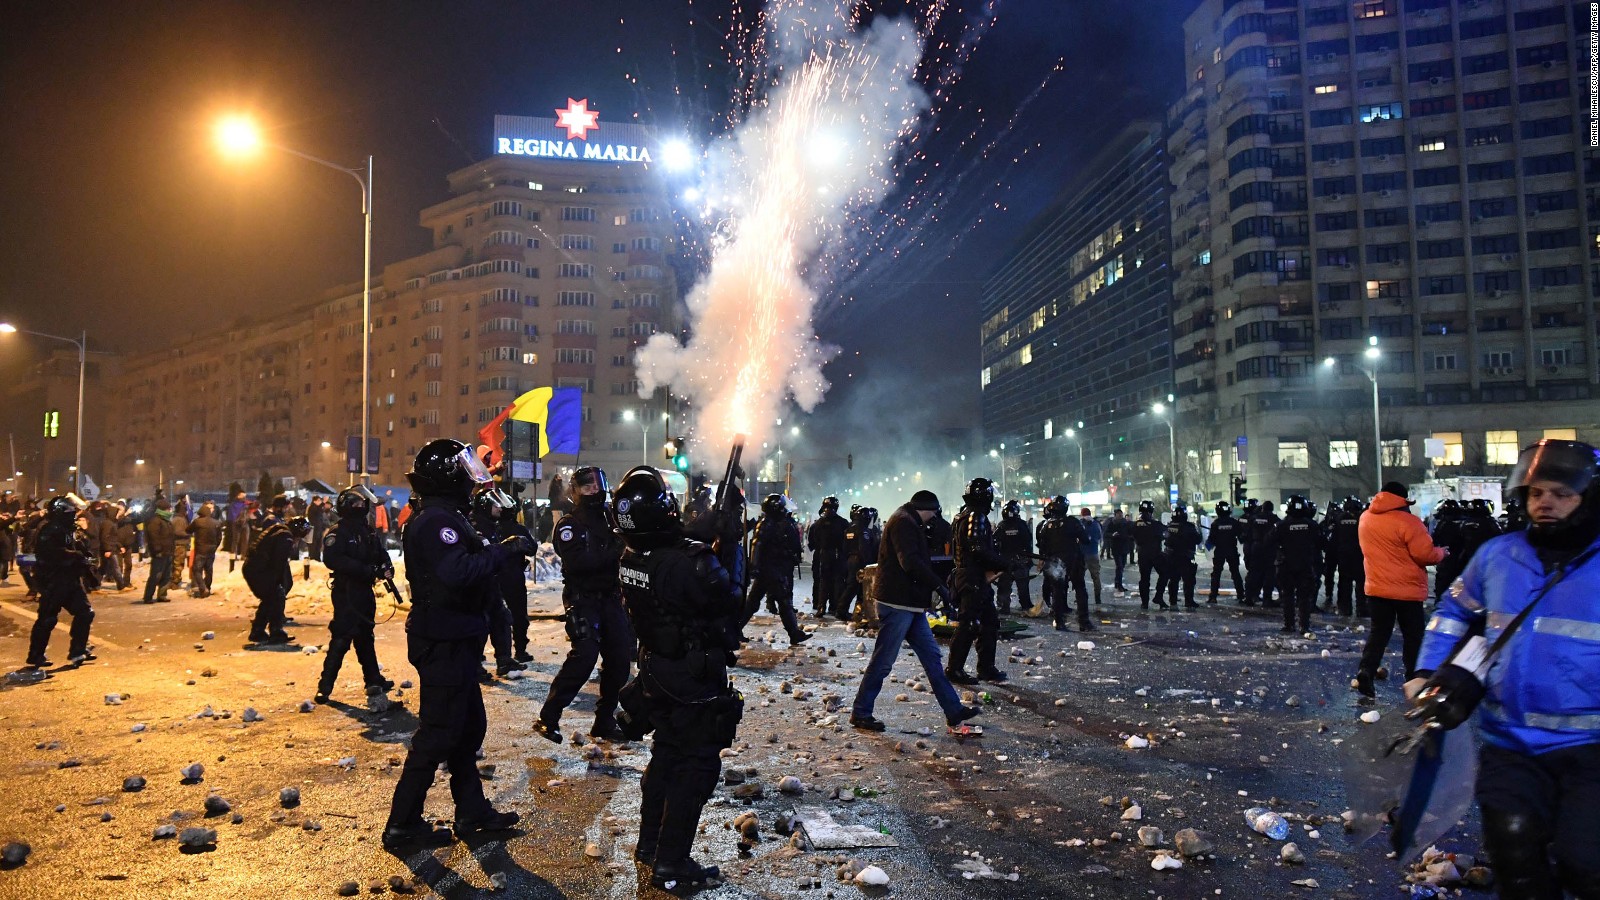 Romania Scraps Proposed Corruption Bill Amid Protests Cnn 9075